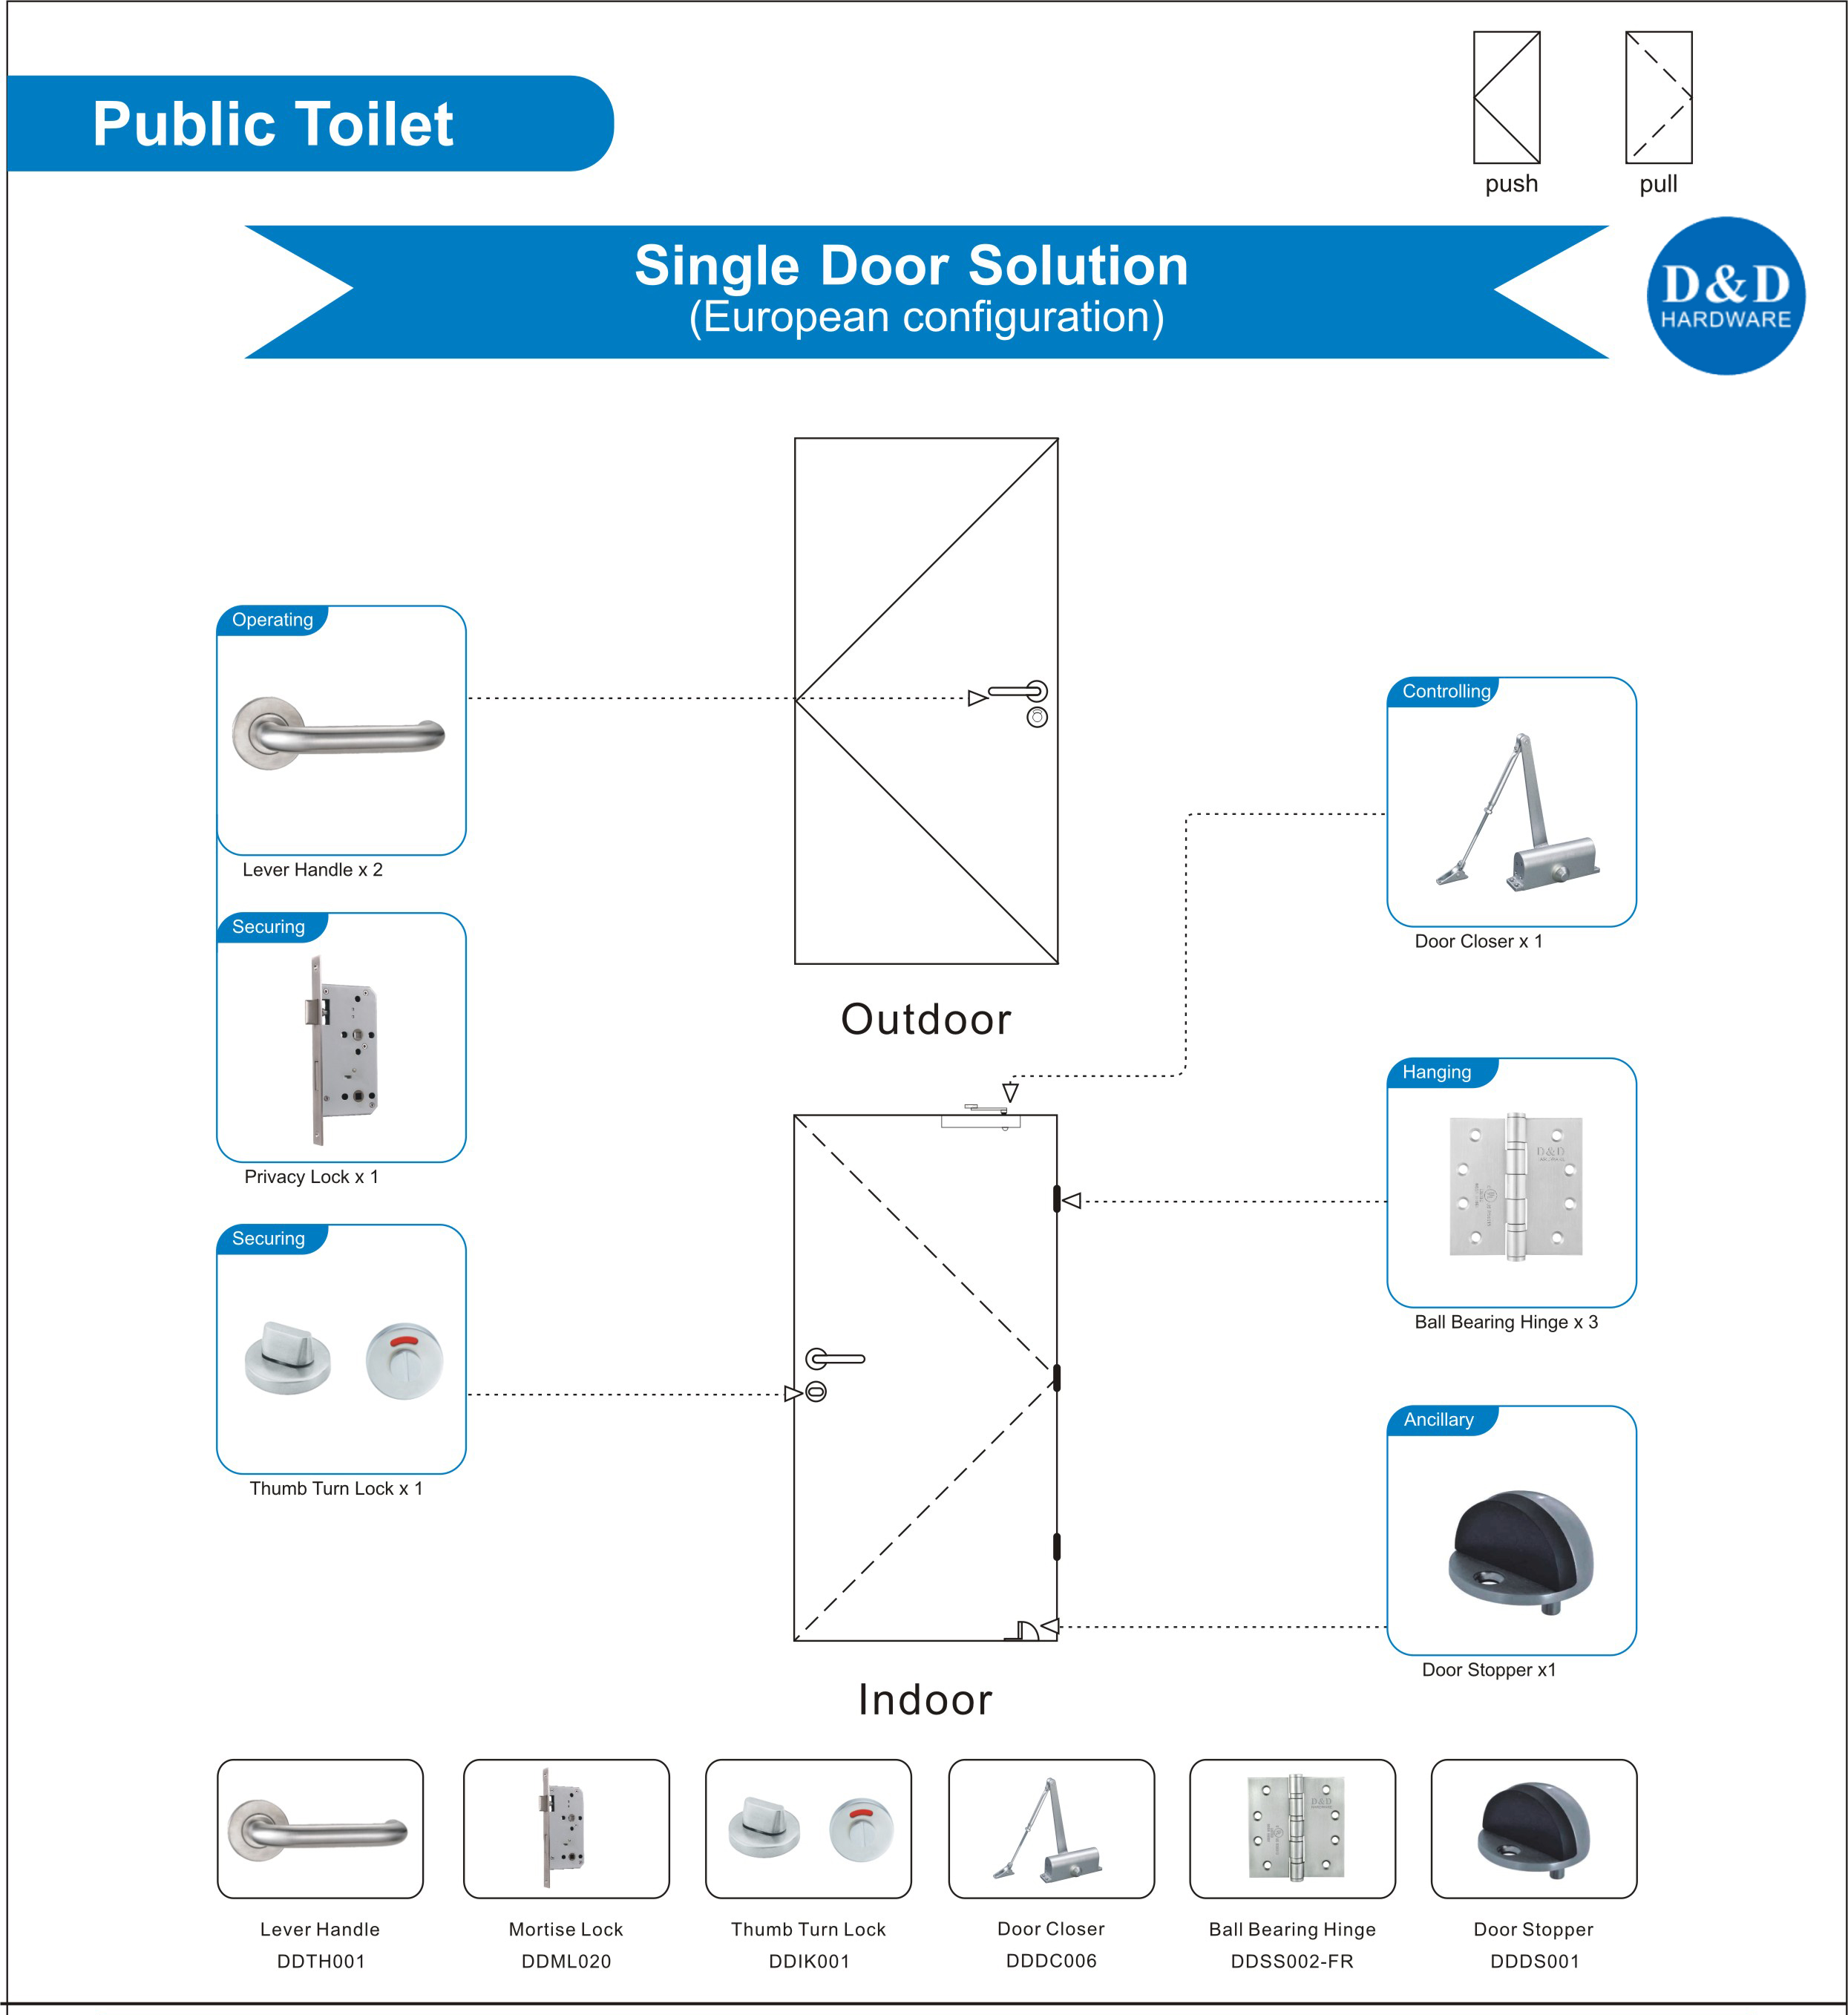 Public Toilet-D&D Hardware 